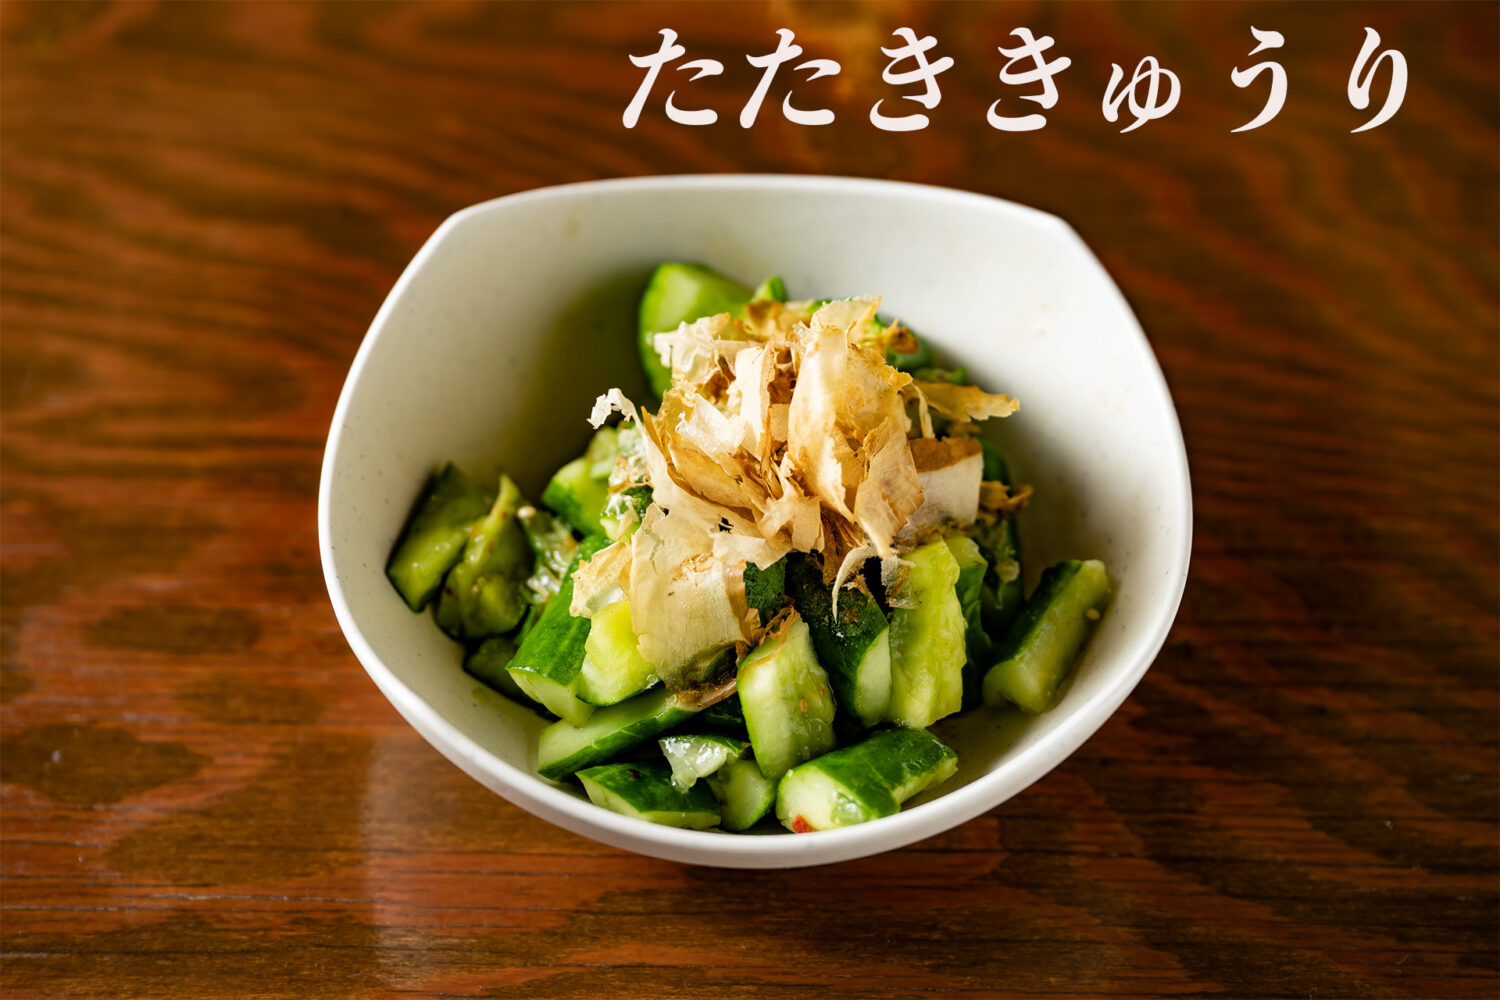 Crushed Cucumber　たたききゅうり　tataki kyuri